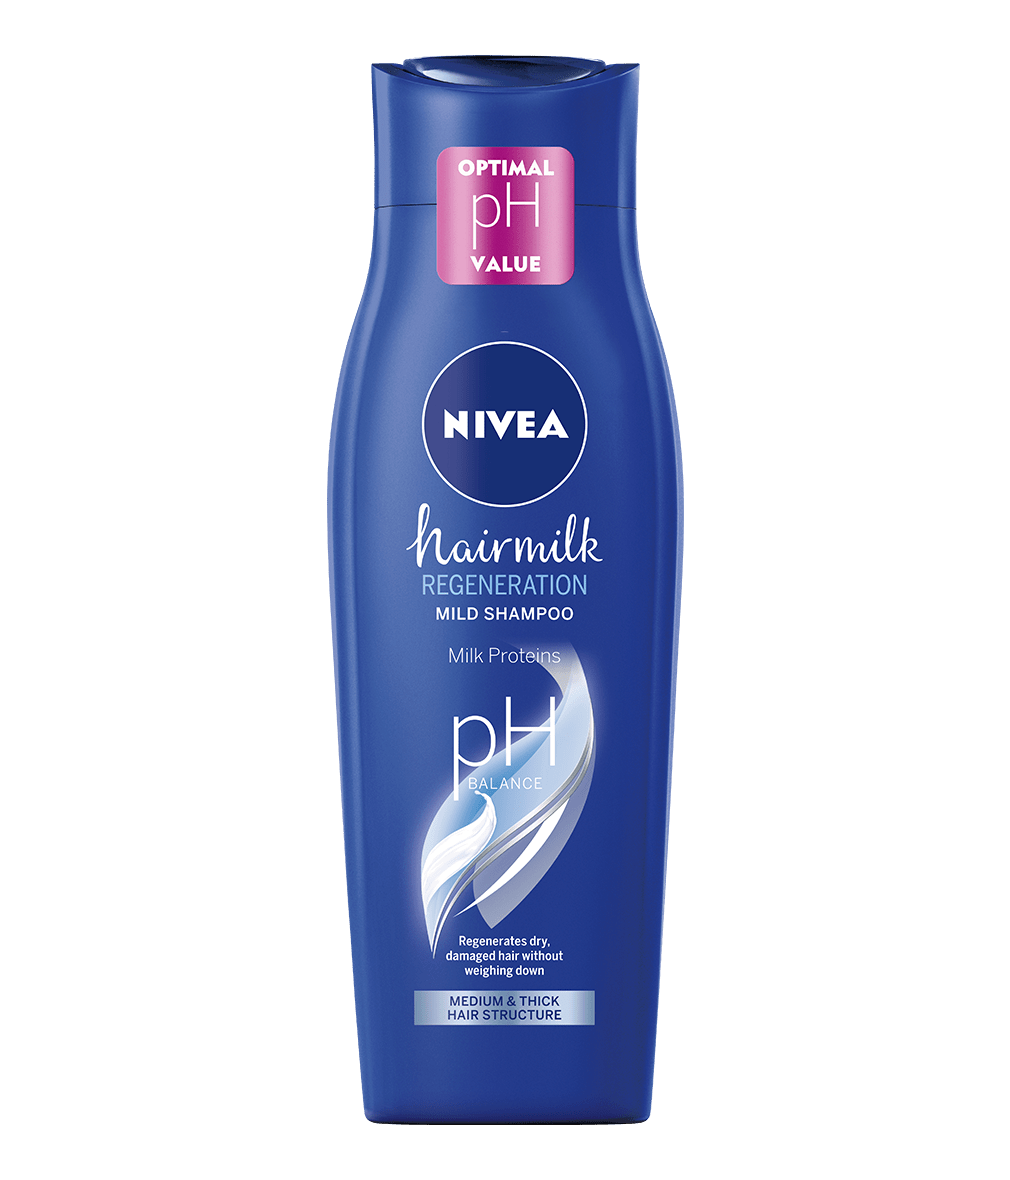 nivea milk szampon